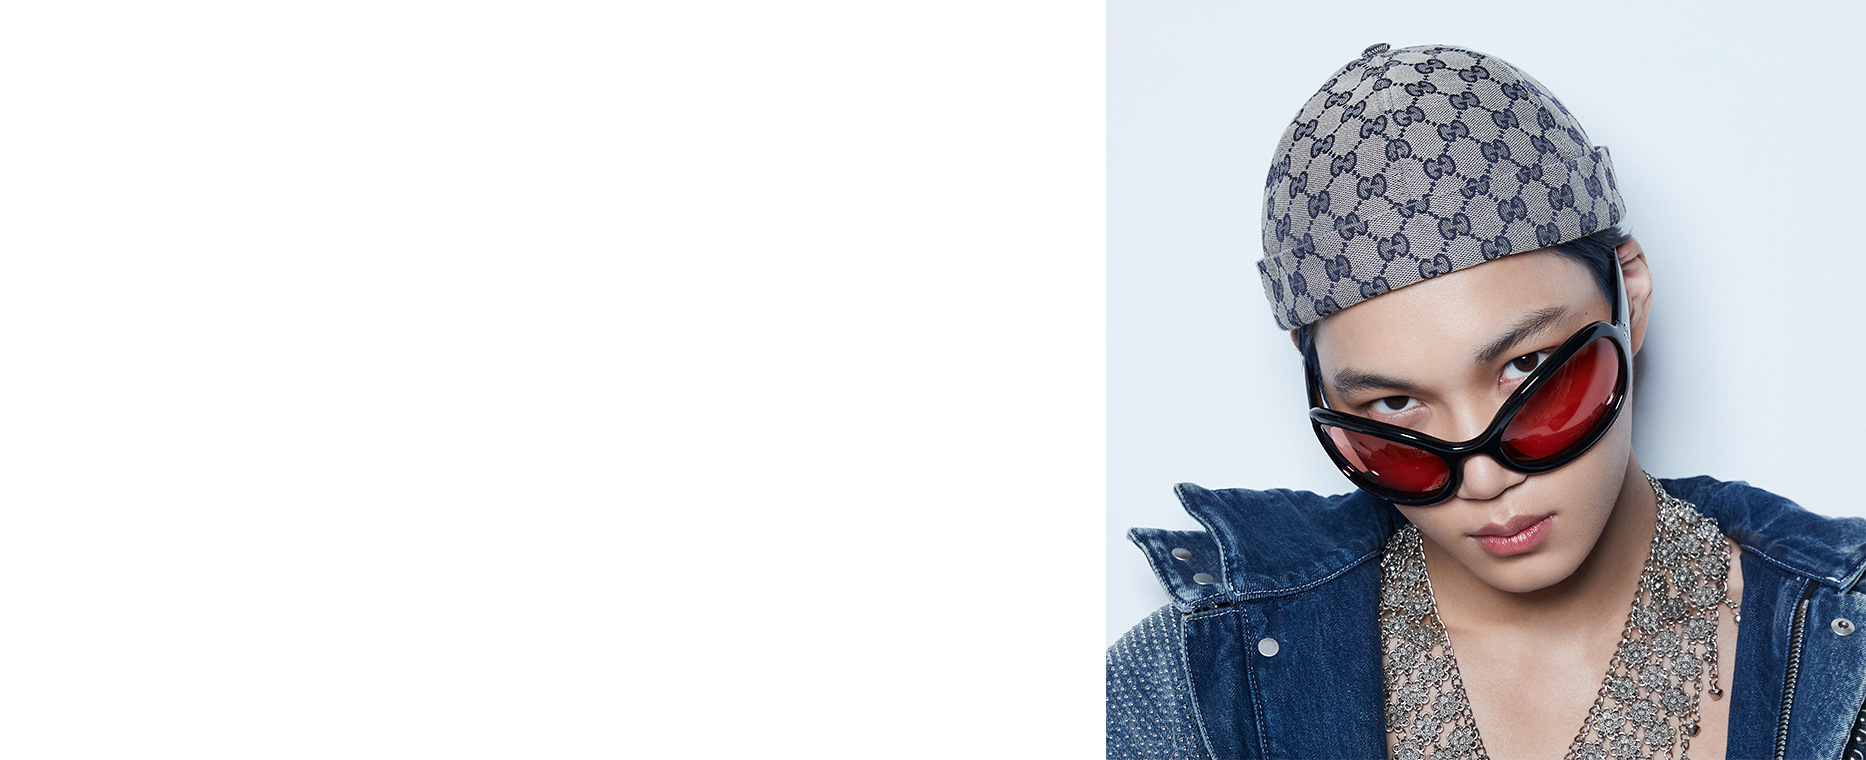 KAI The 3rd Mini Album 'Rover' 2022.11.14 Release